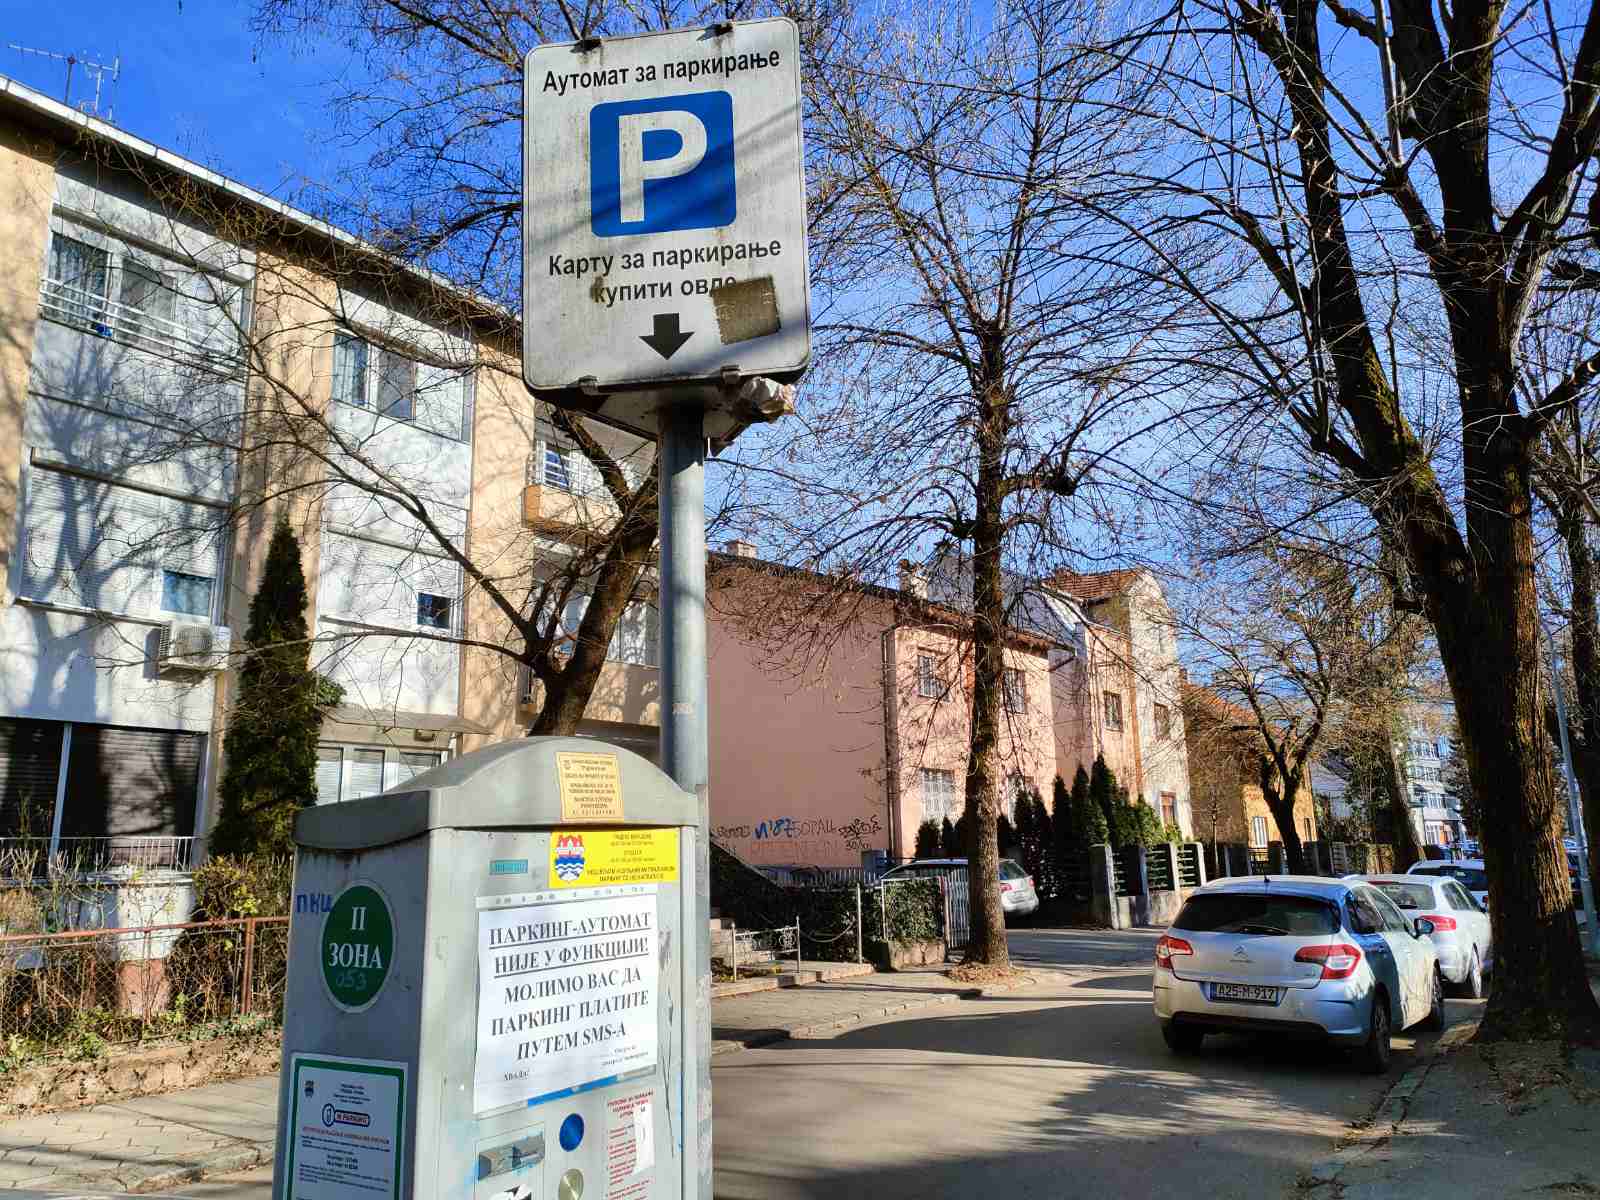  Besplatan parking u Banjaluci za građane Srbije 